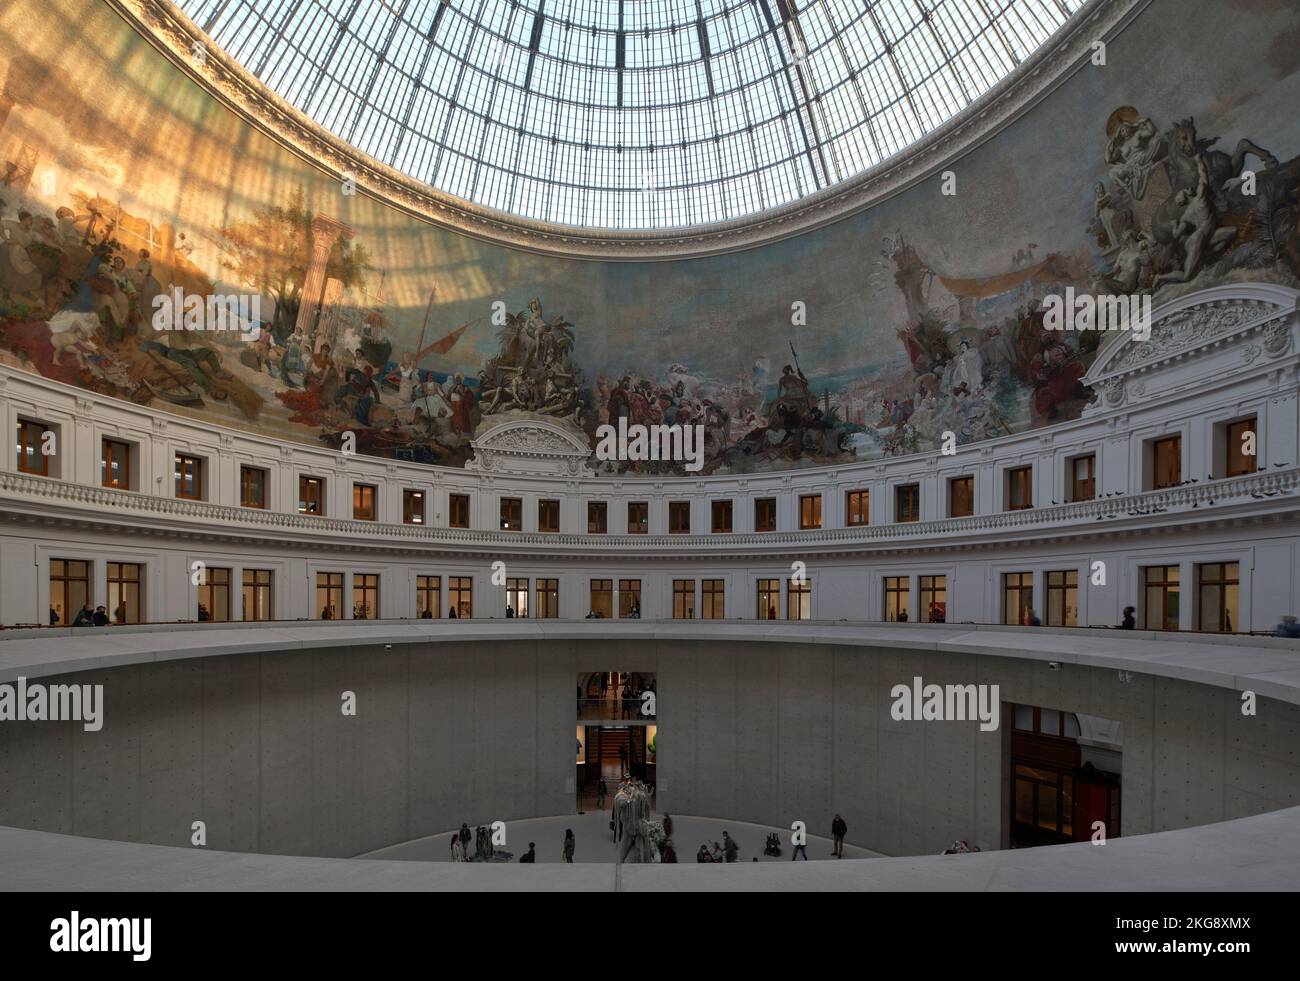 Hauptraum von der oberen Ebene. Bourse de Commerce, Paris, Frankreich. Architekt: Tadao Ando , 2021. Stockfoto